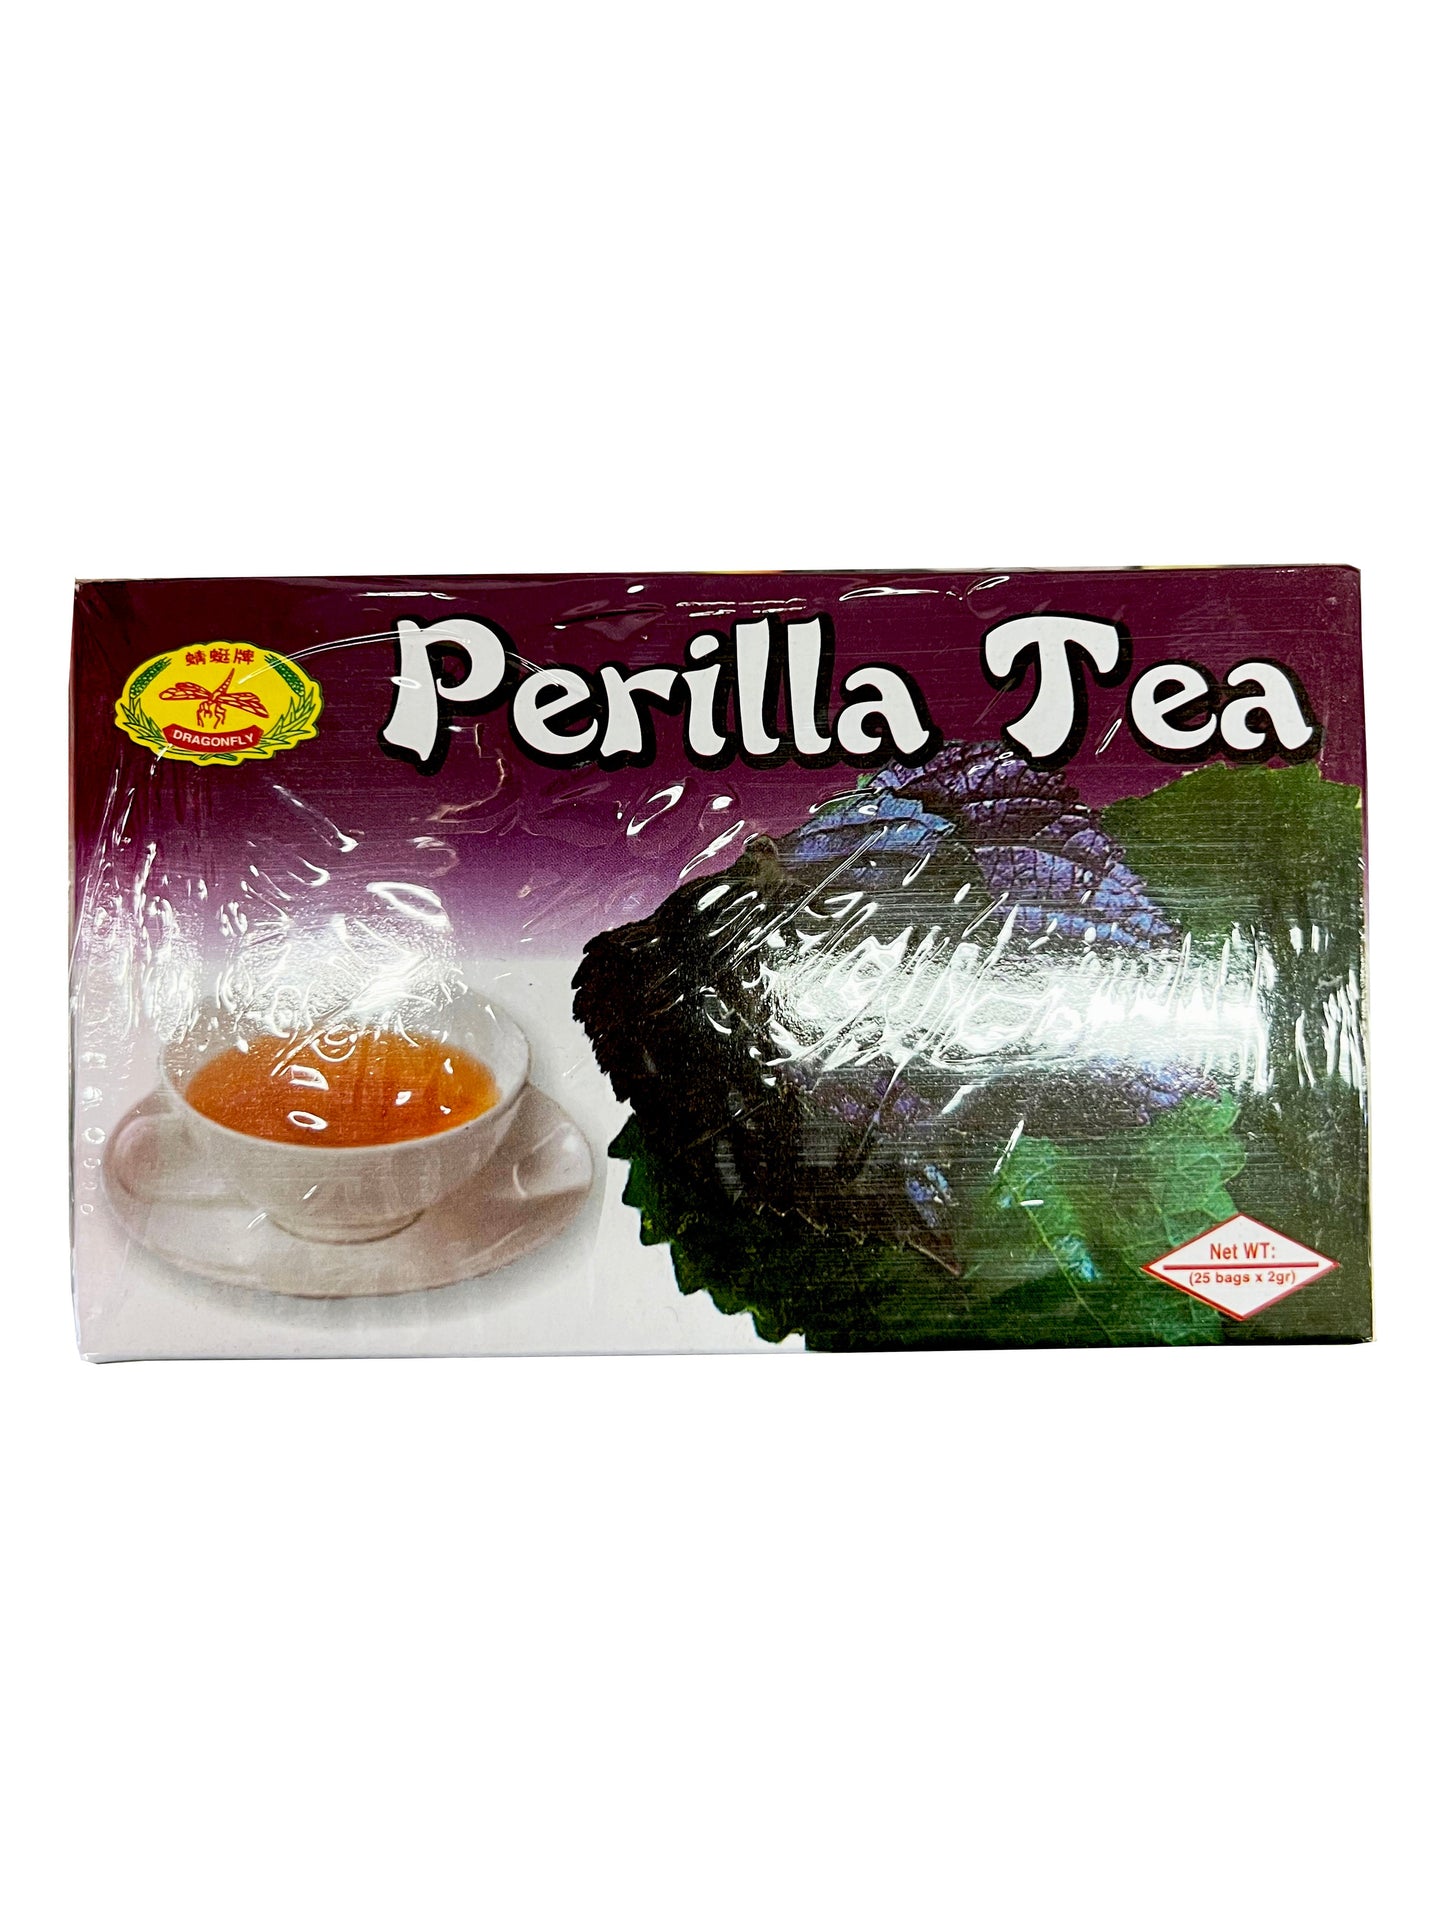 Perilla Tea 紫苏茶